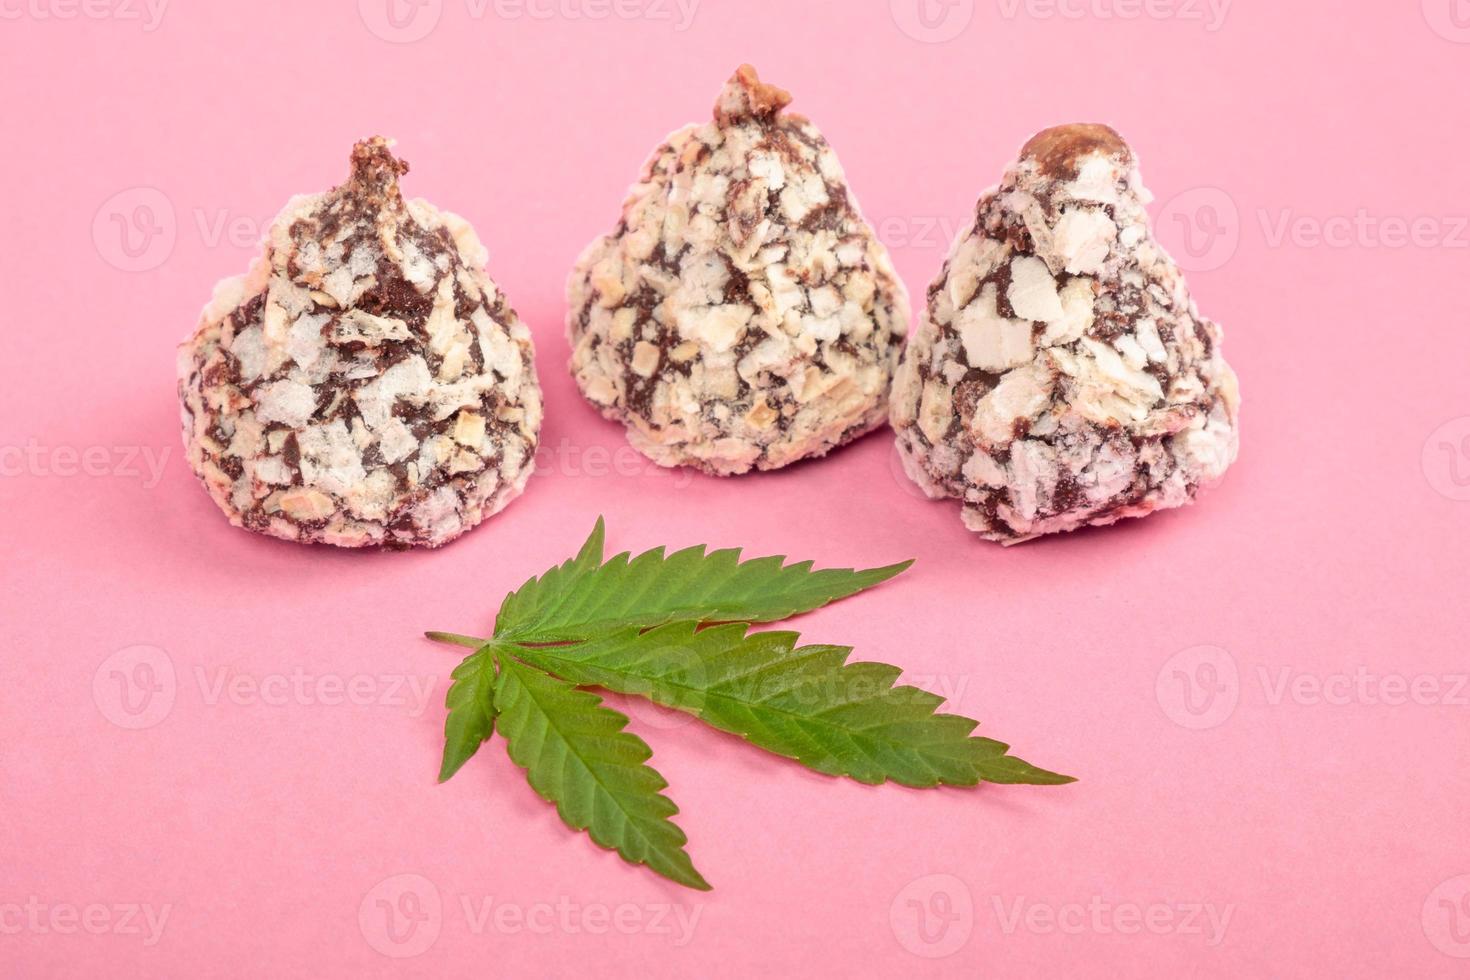 Cannabisblatt und süße Pralinen, Marihuana-Essen foto